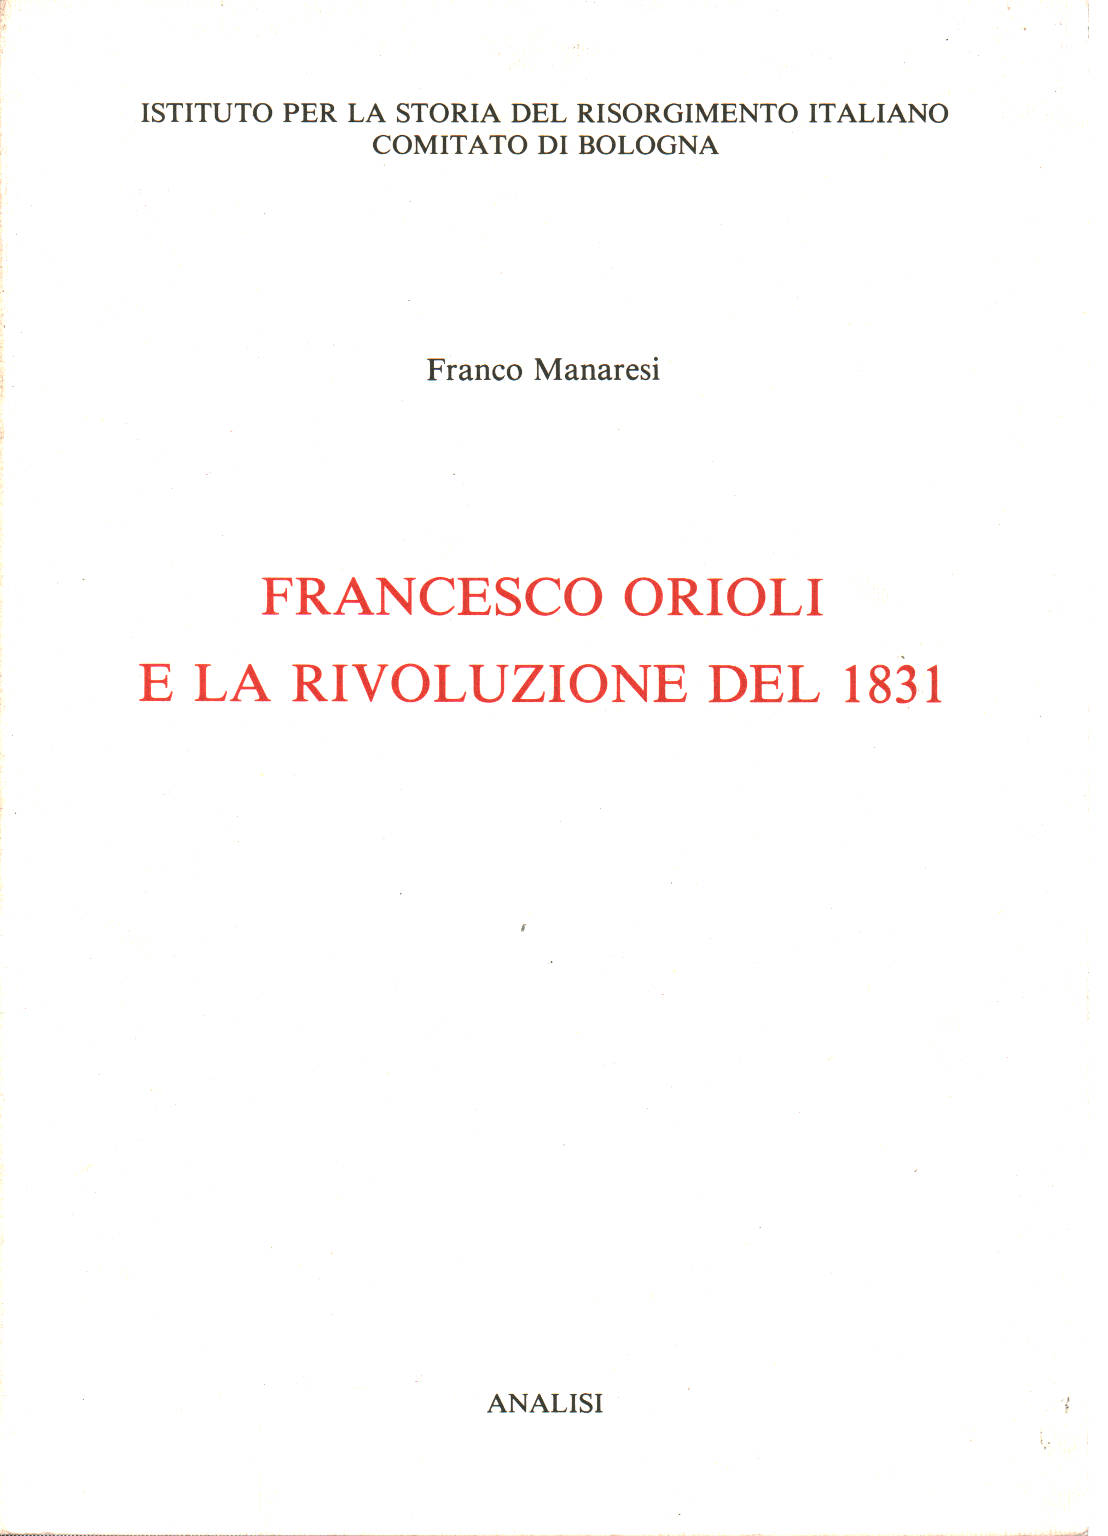 Francesco Orioli e la Rivoluzione del 1831, Franco Manaresi